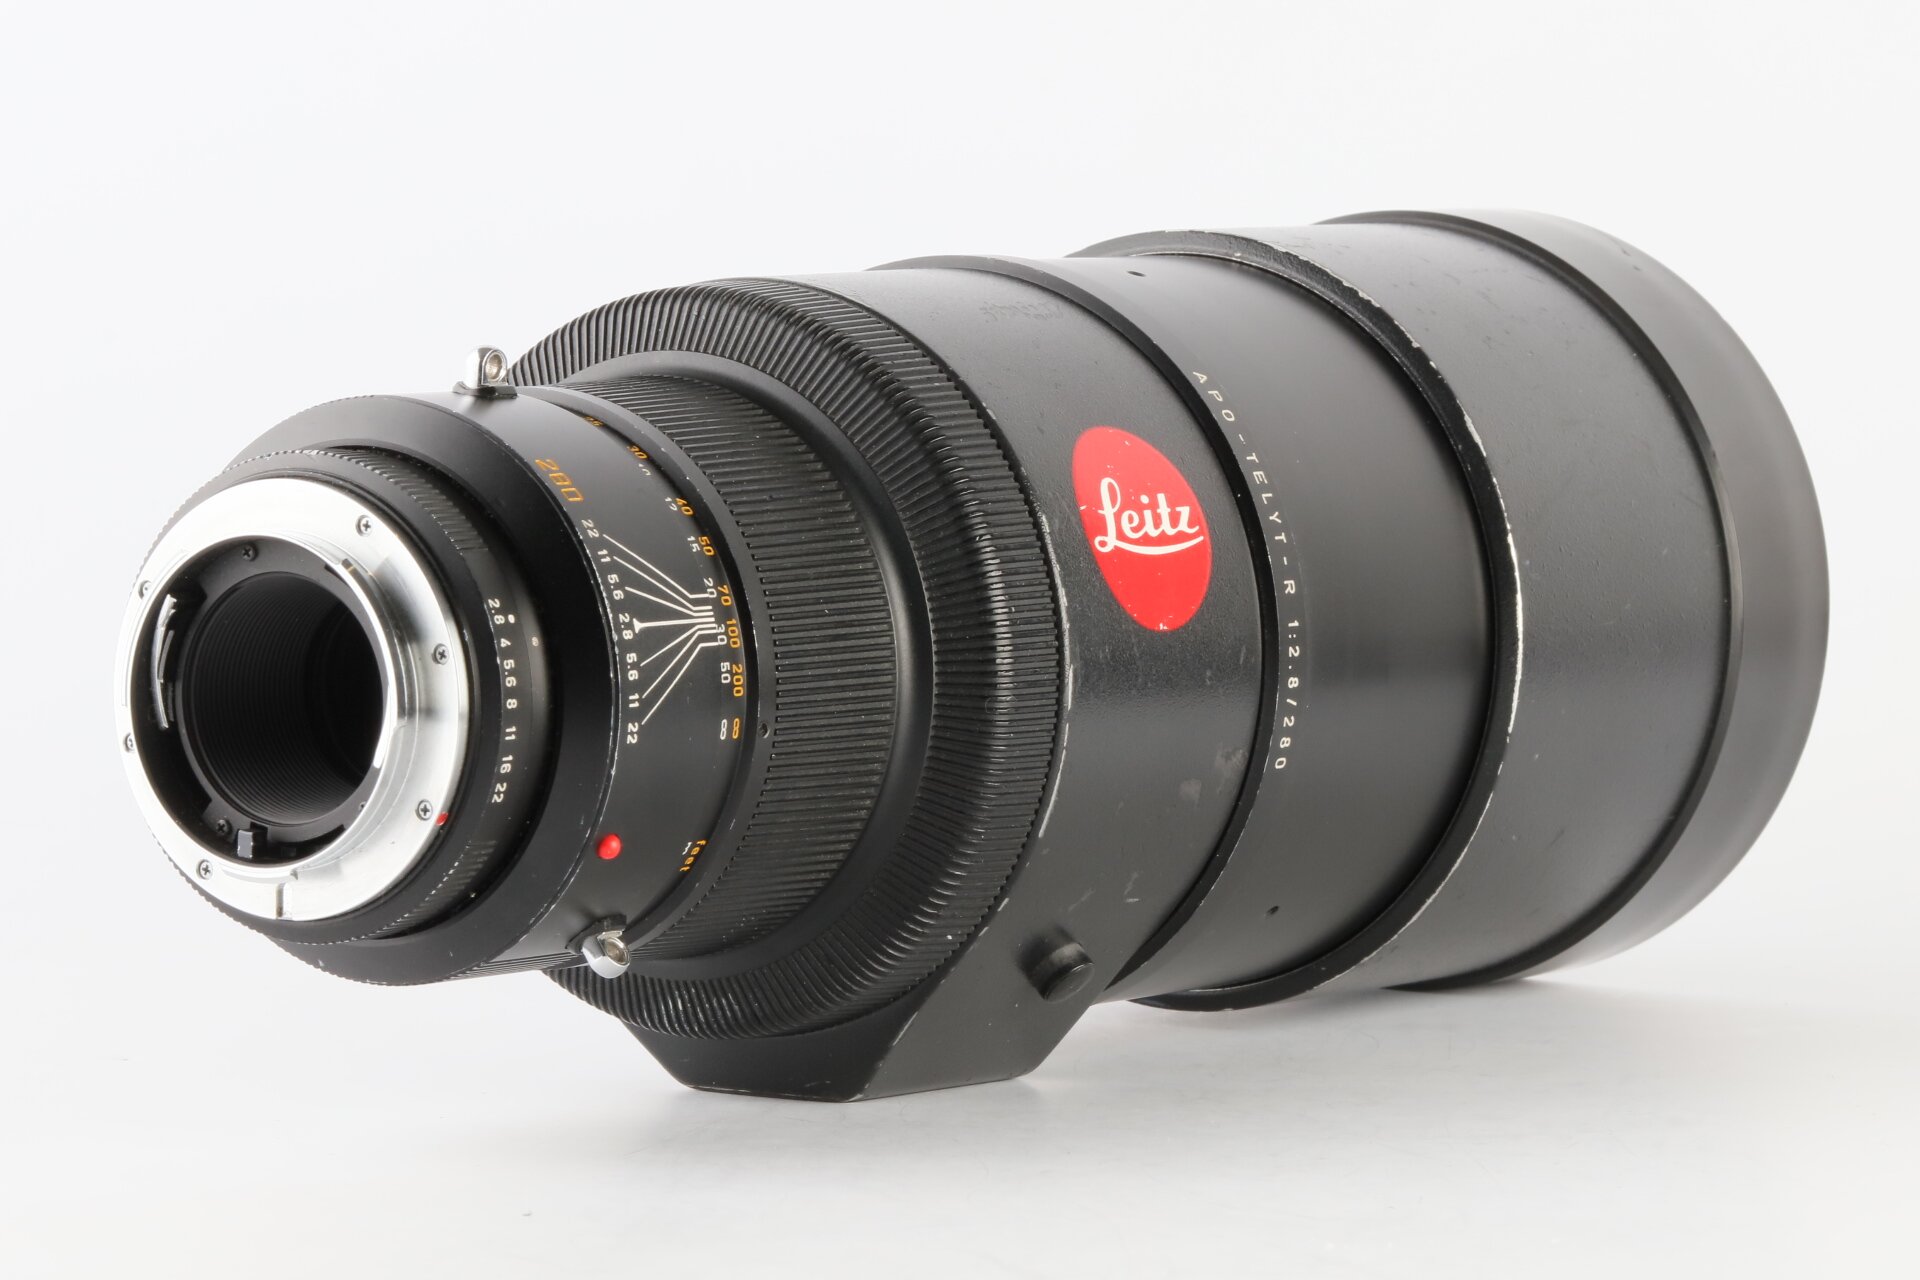 Leica R 2,8/280mm Apo-Telyt-R 3CAM